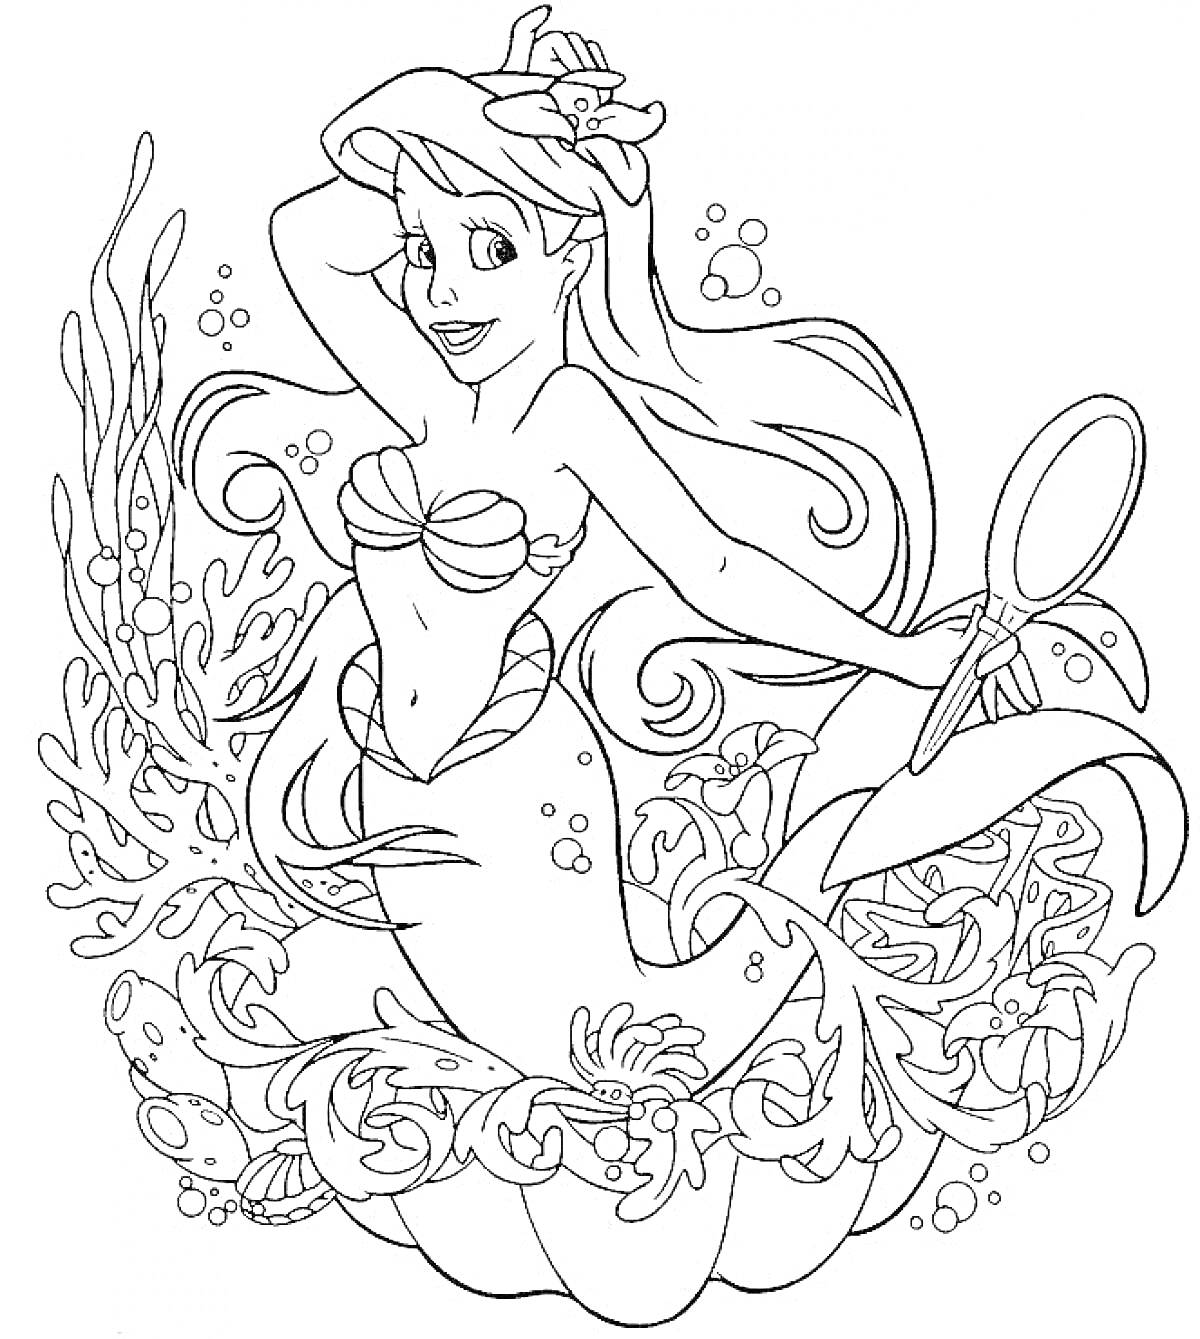 Раскраска Русалка с цветком в волосах, сидящая среди подводной растительности с зеркалом в руке